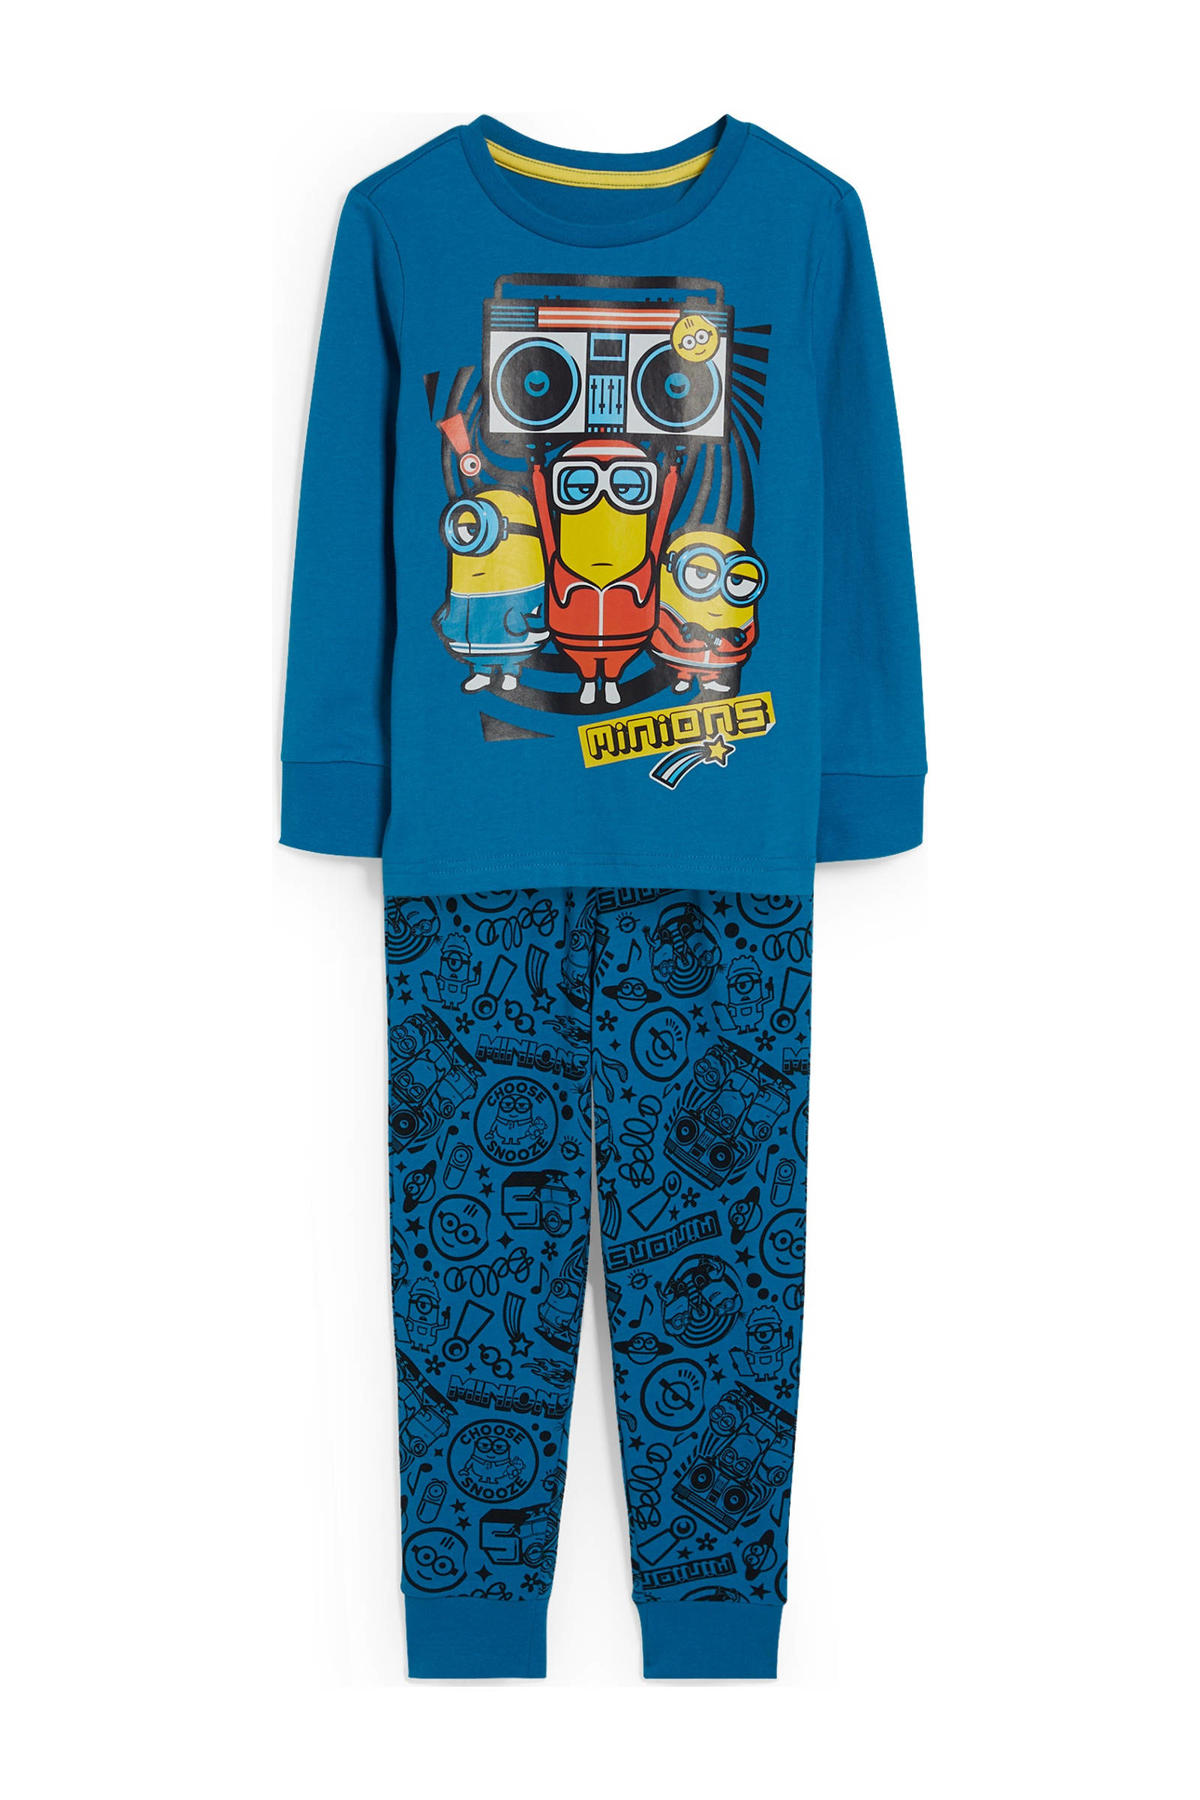 boog aan de andere kant, Beknopt C&A Minions pyjama blauw/zwart/geel | wehkamp